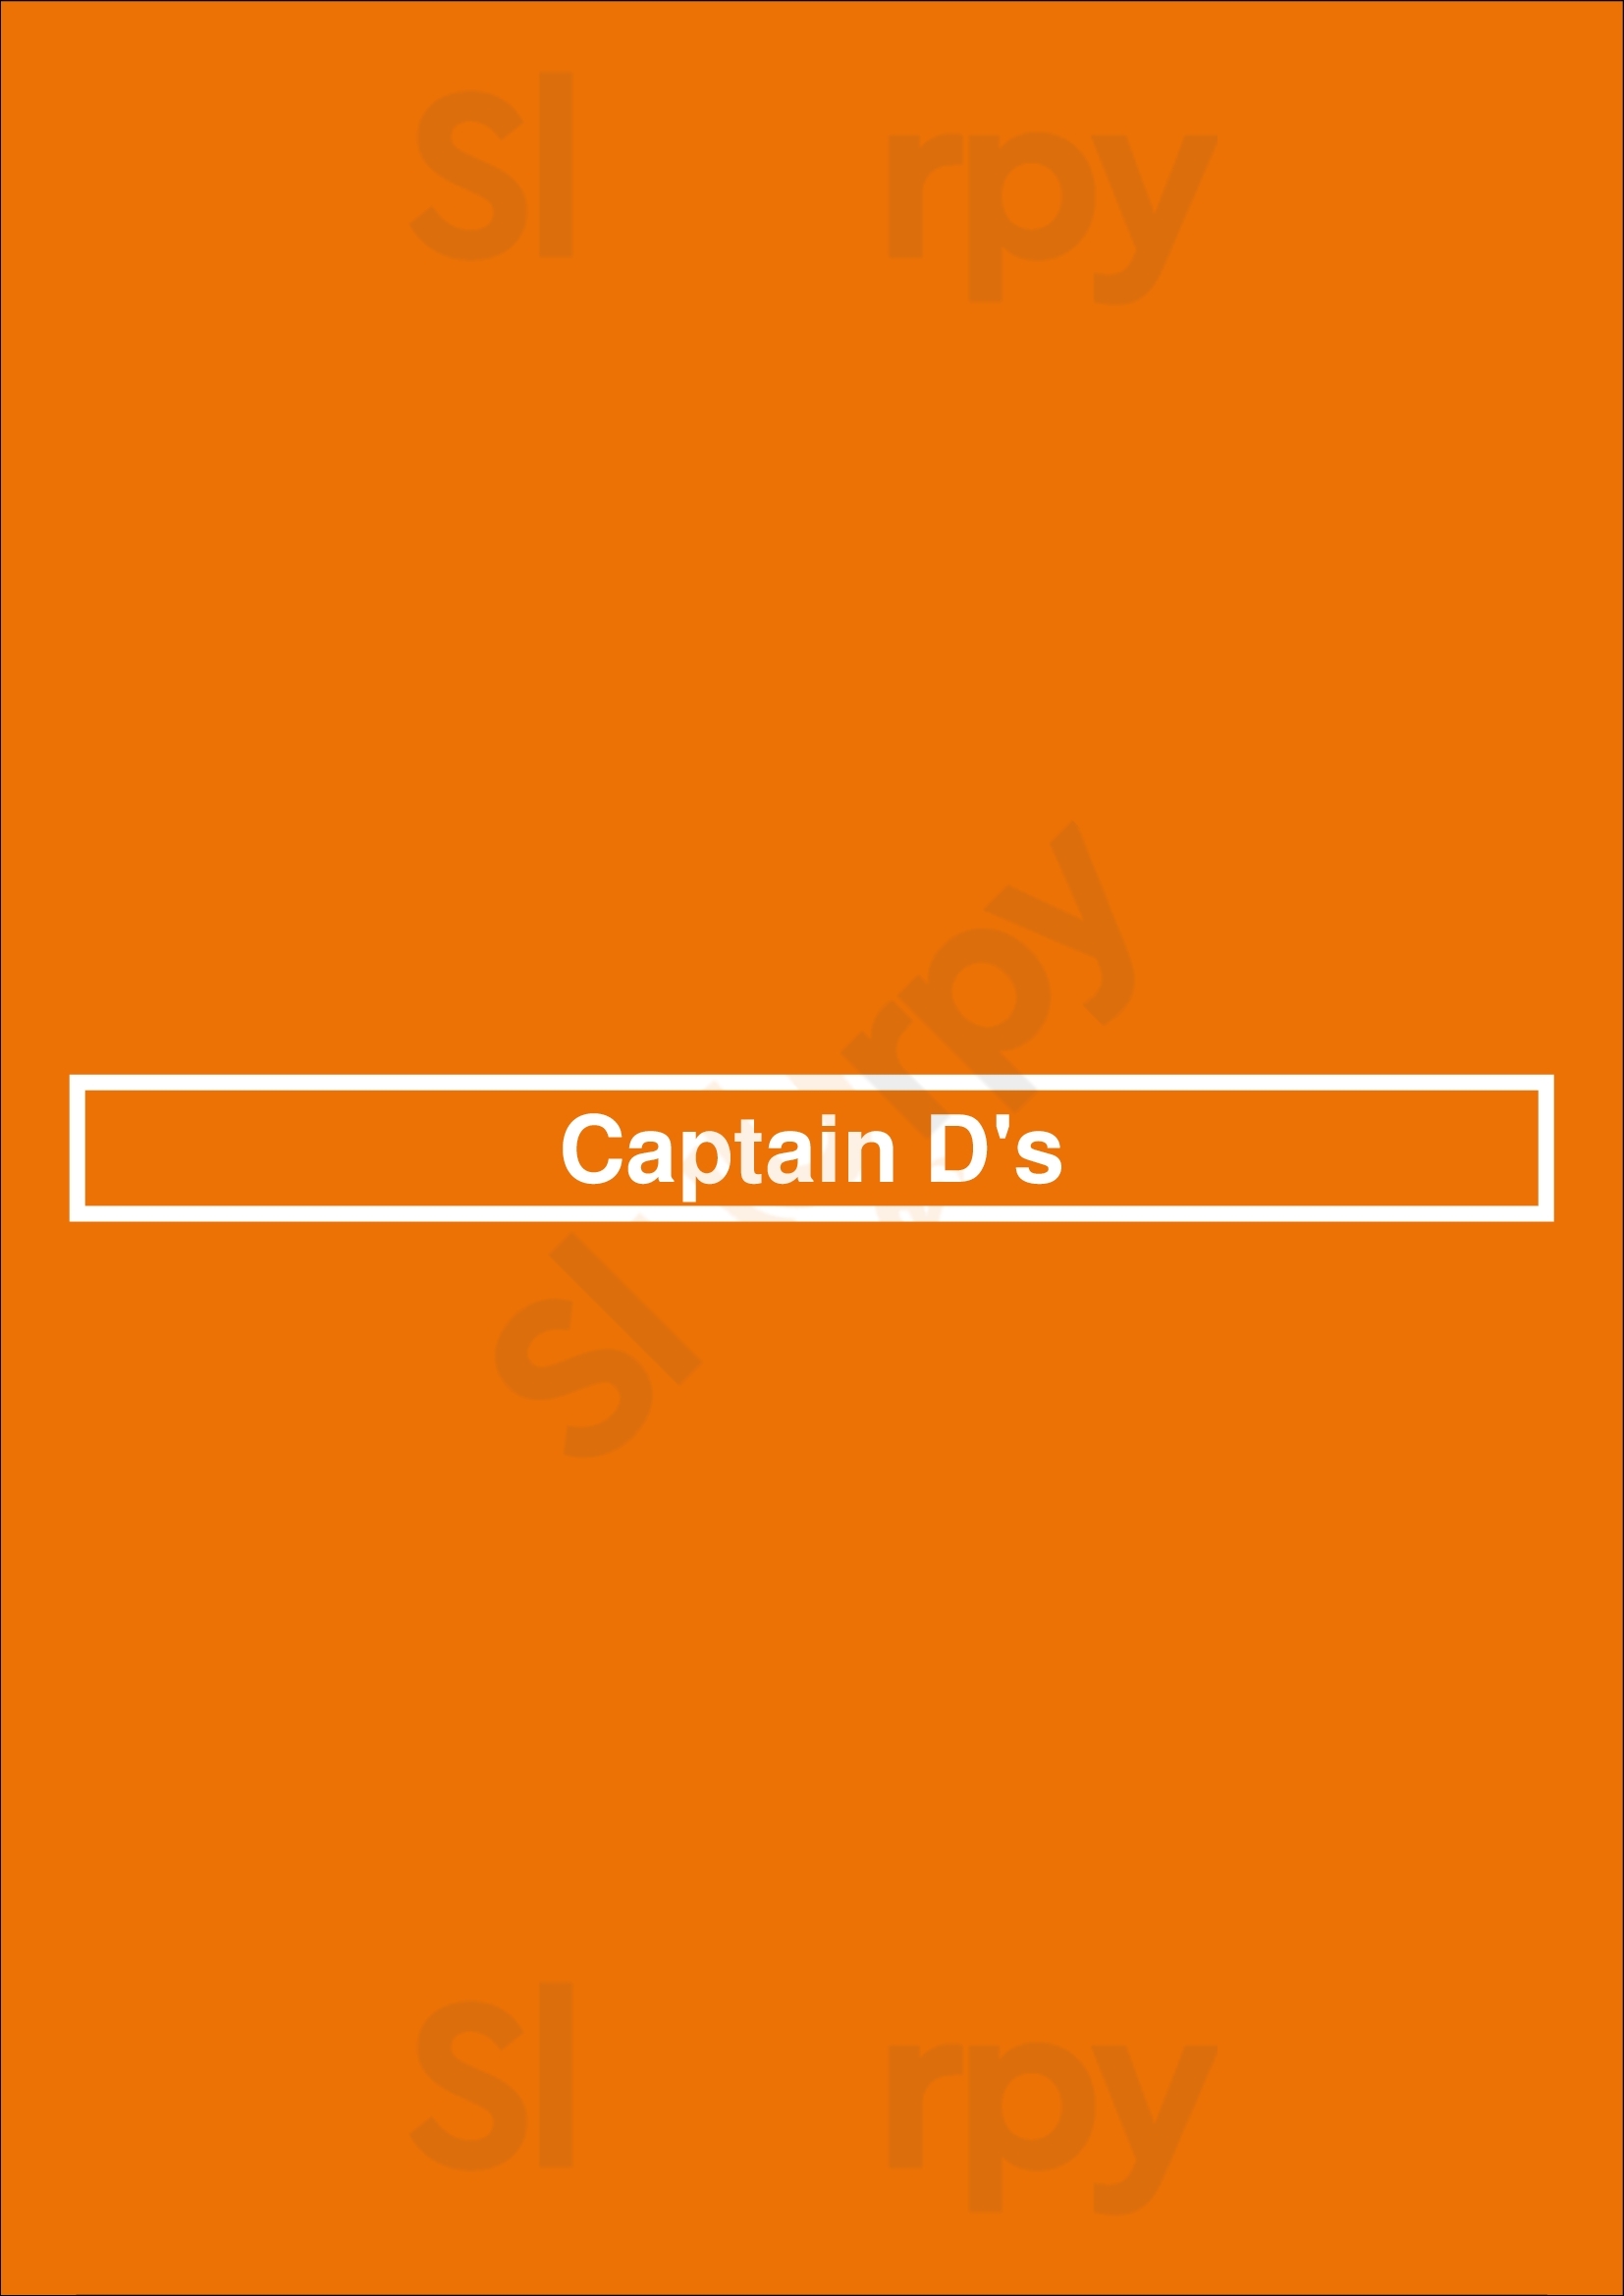 Captain D's Knoxville Menu - 1